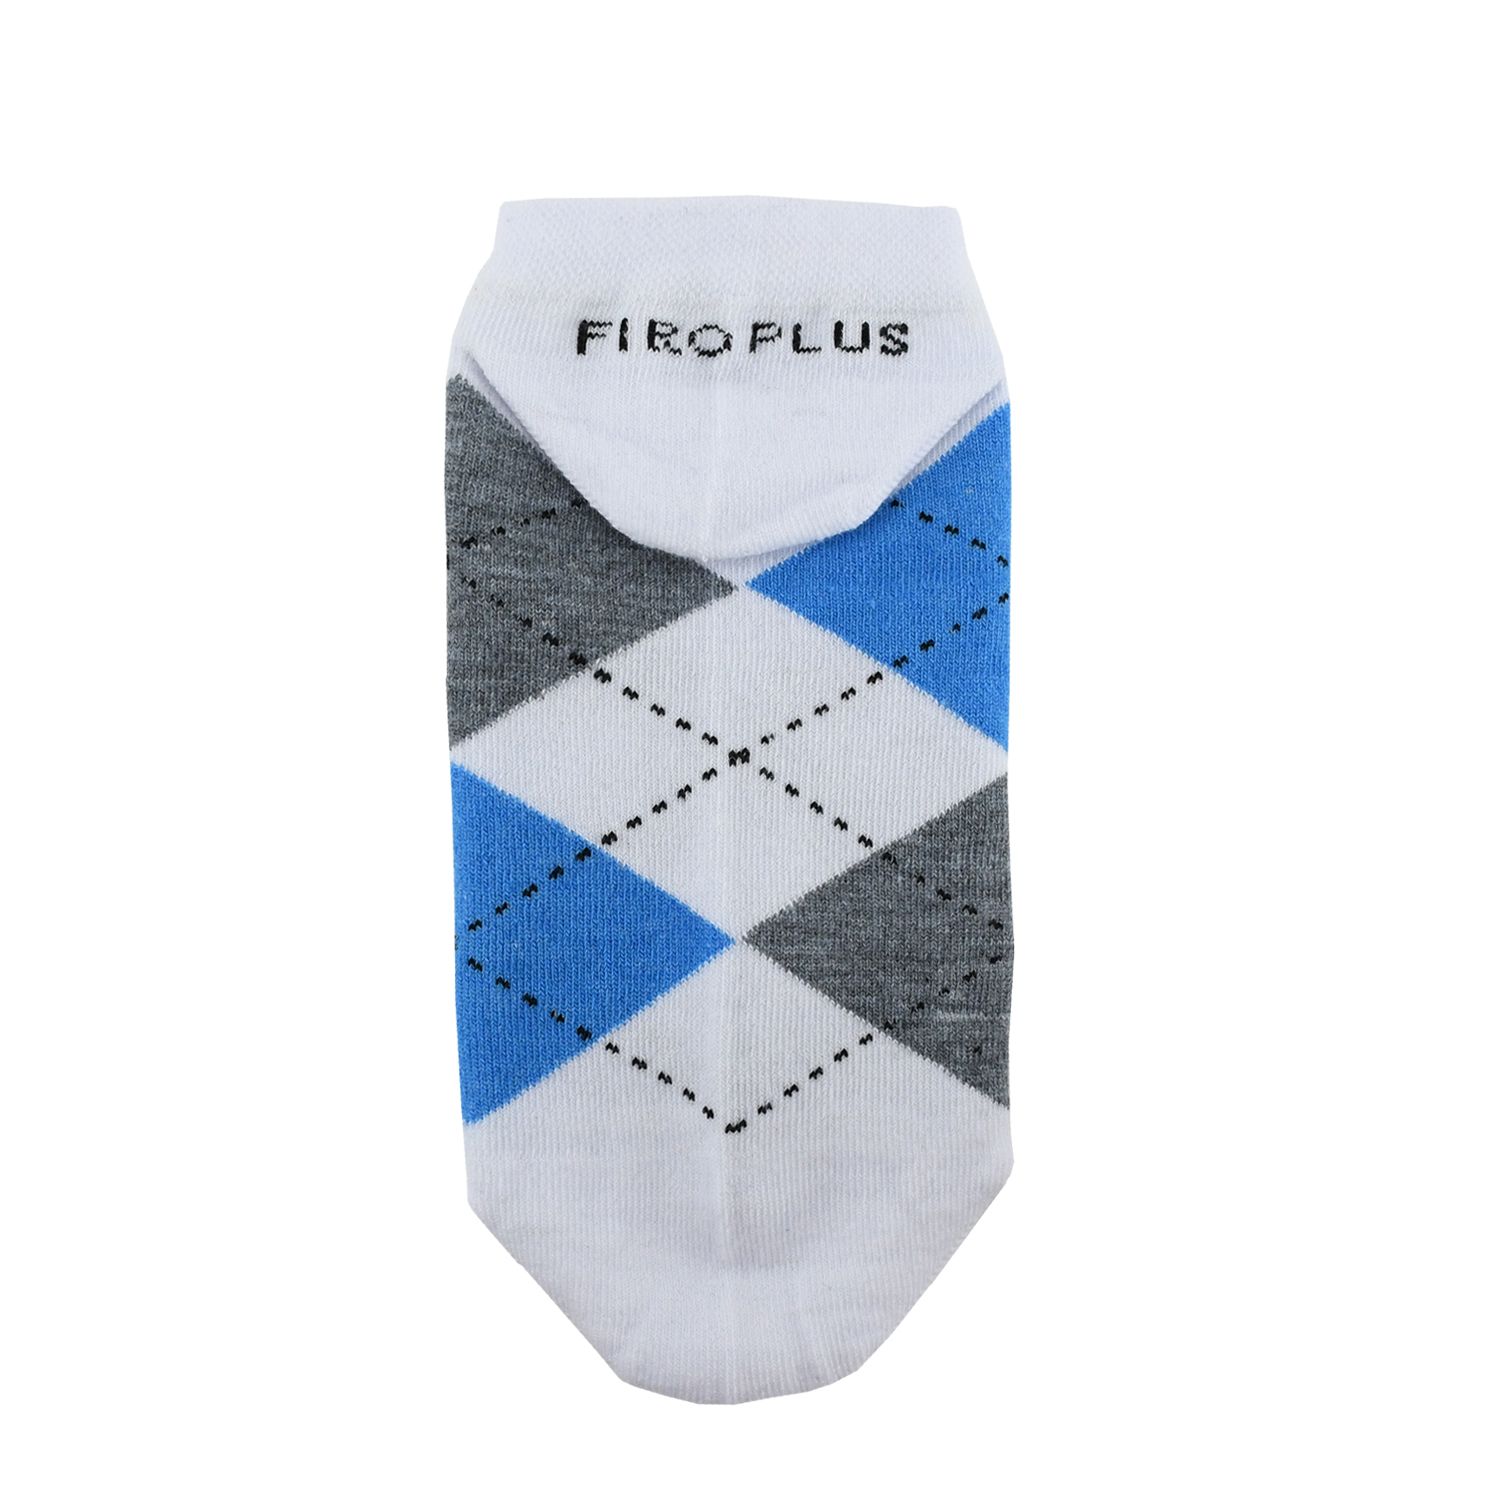 جوراب مردانه فیرو پلاس کد FT3102 مجموعه 3 عددی -  - 3